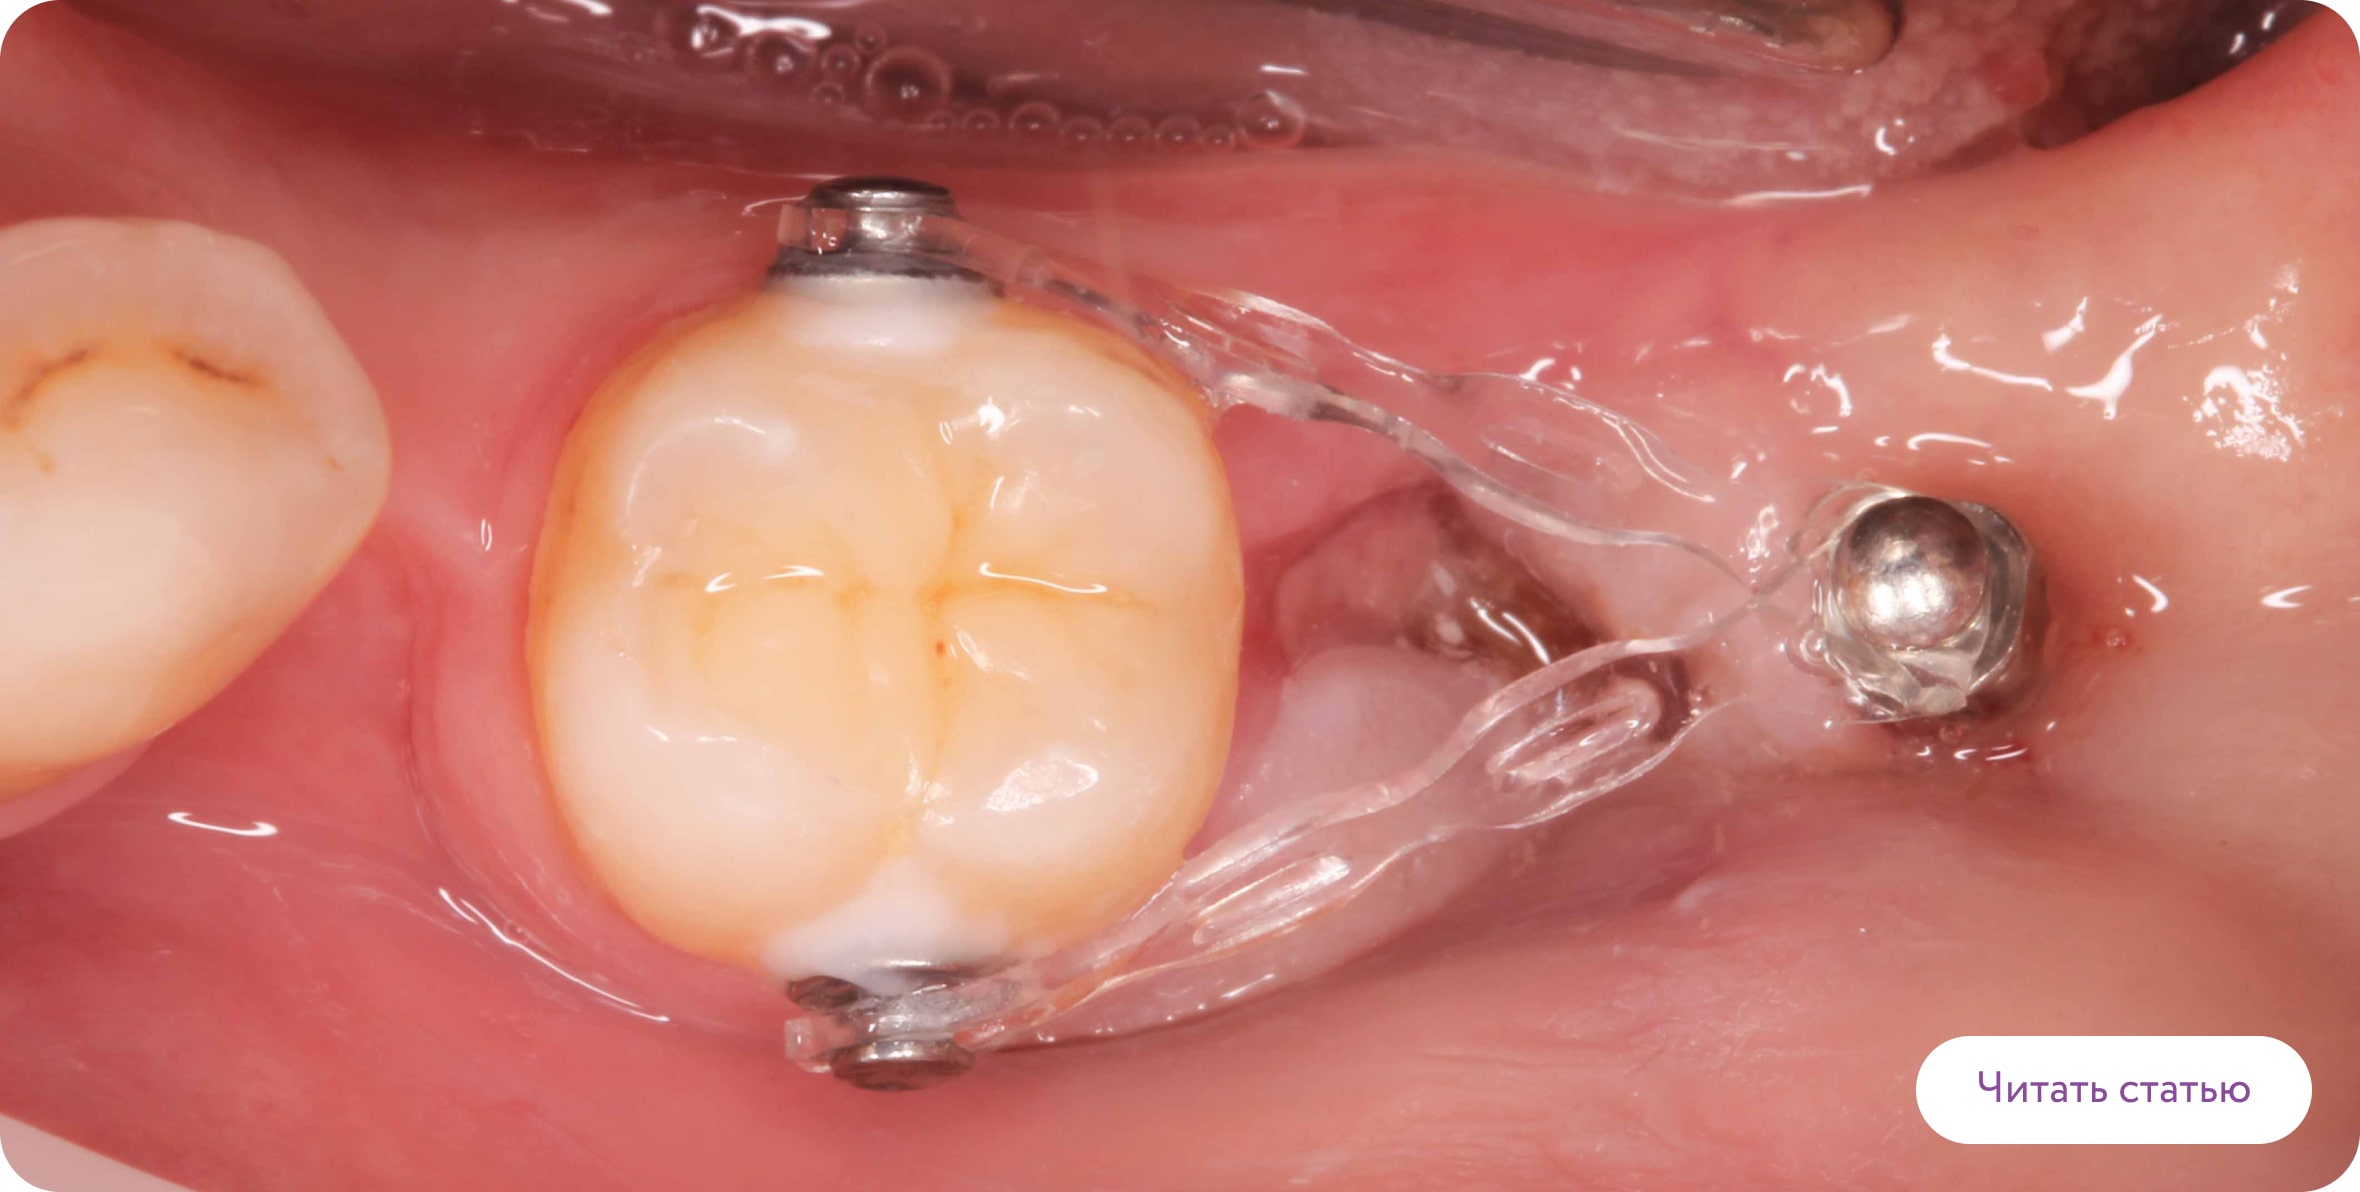 Ортодонтические мини-винты